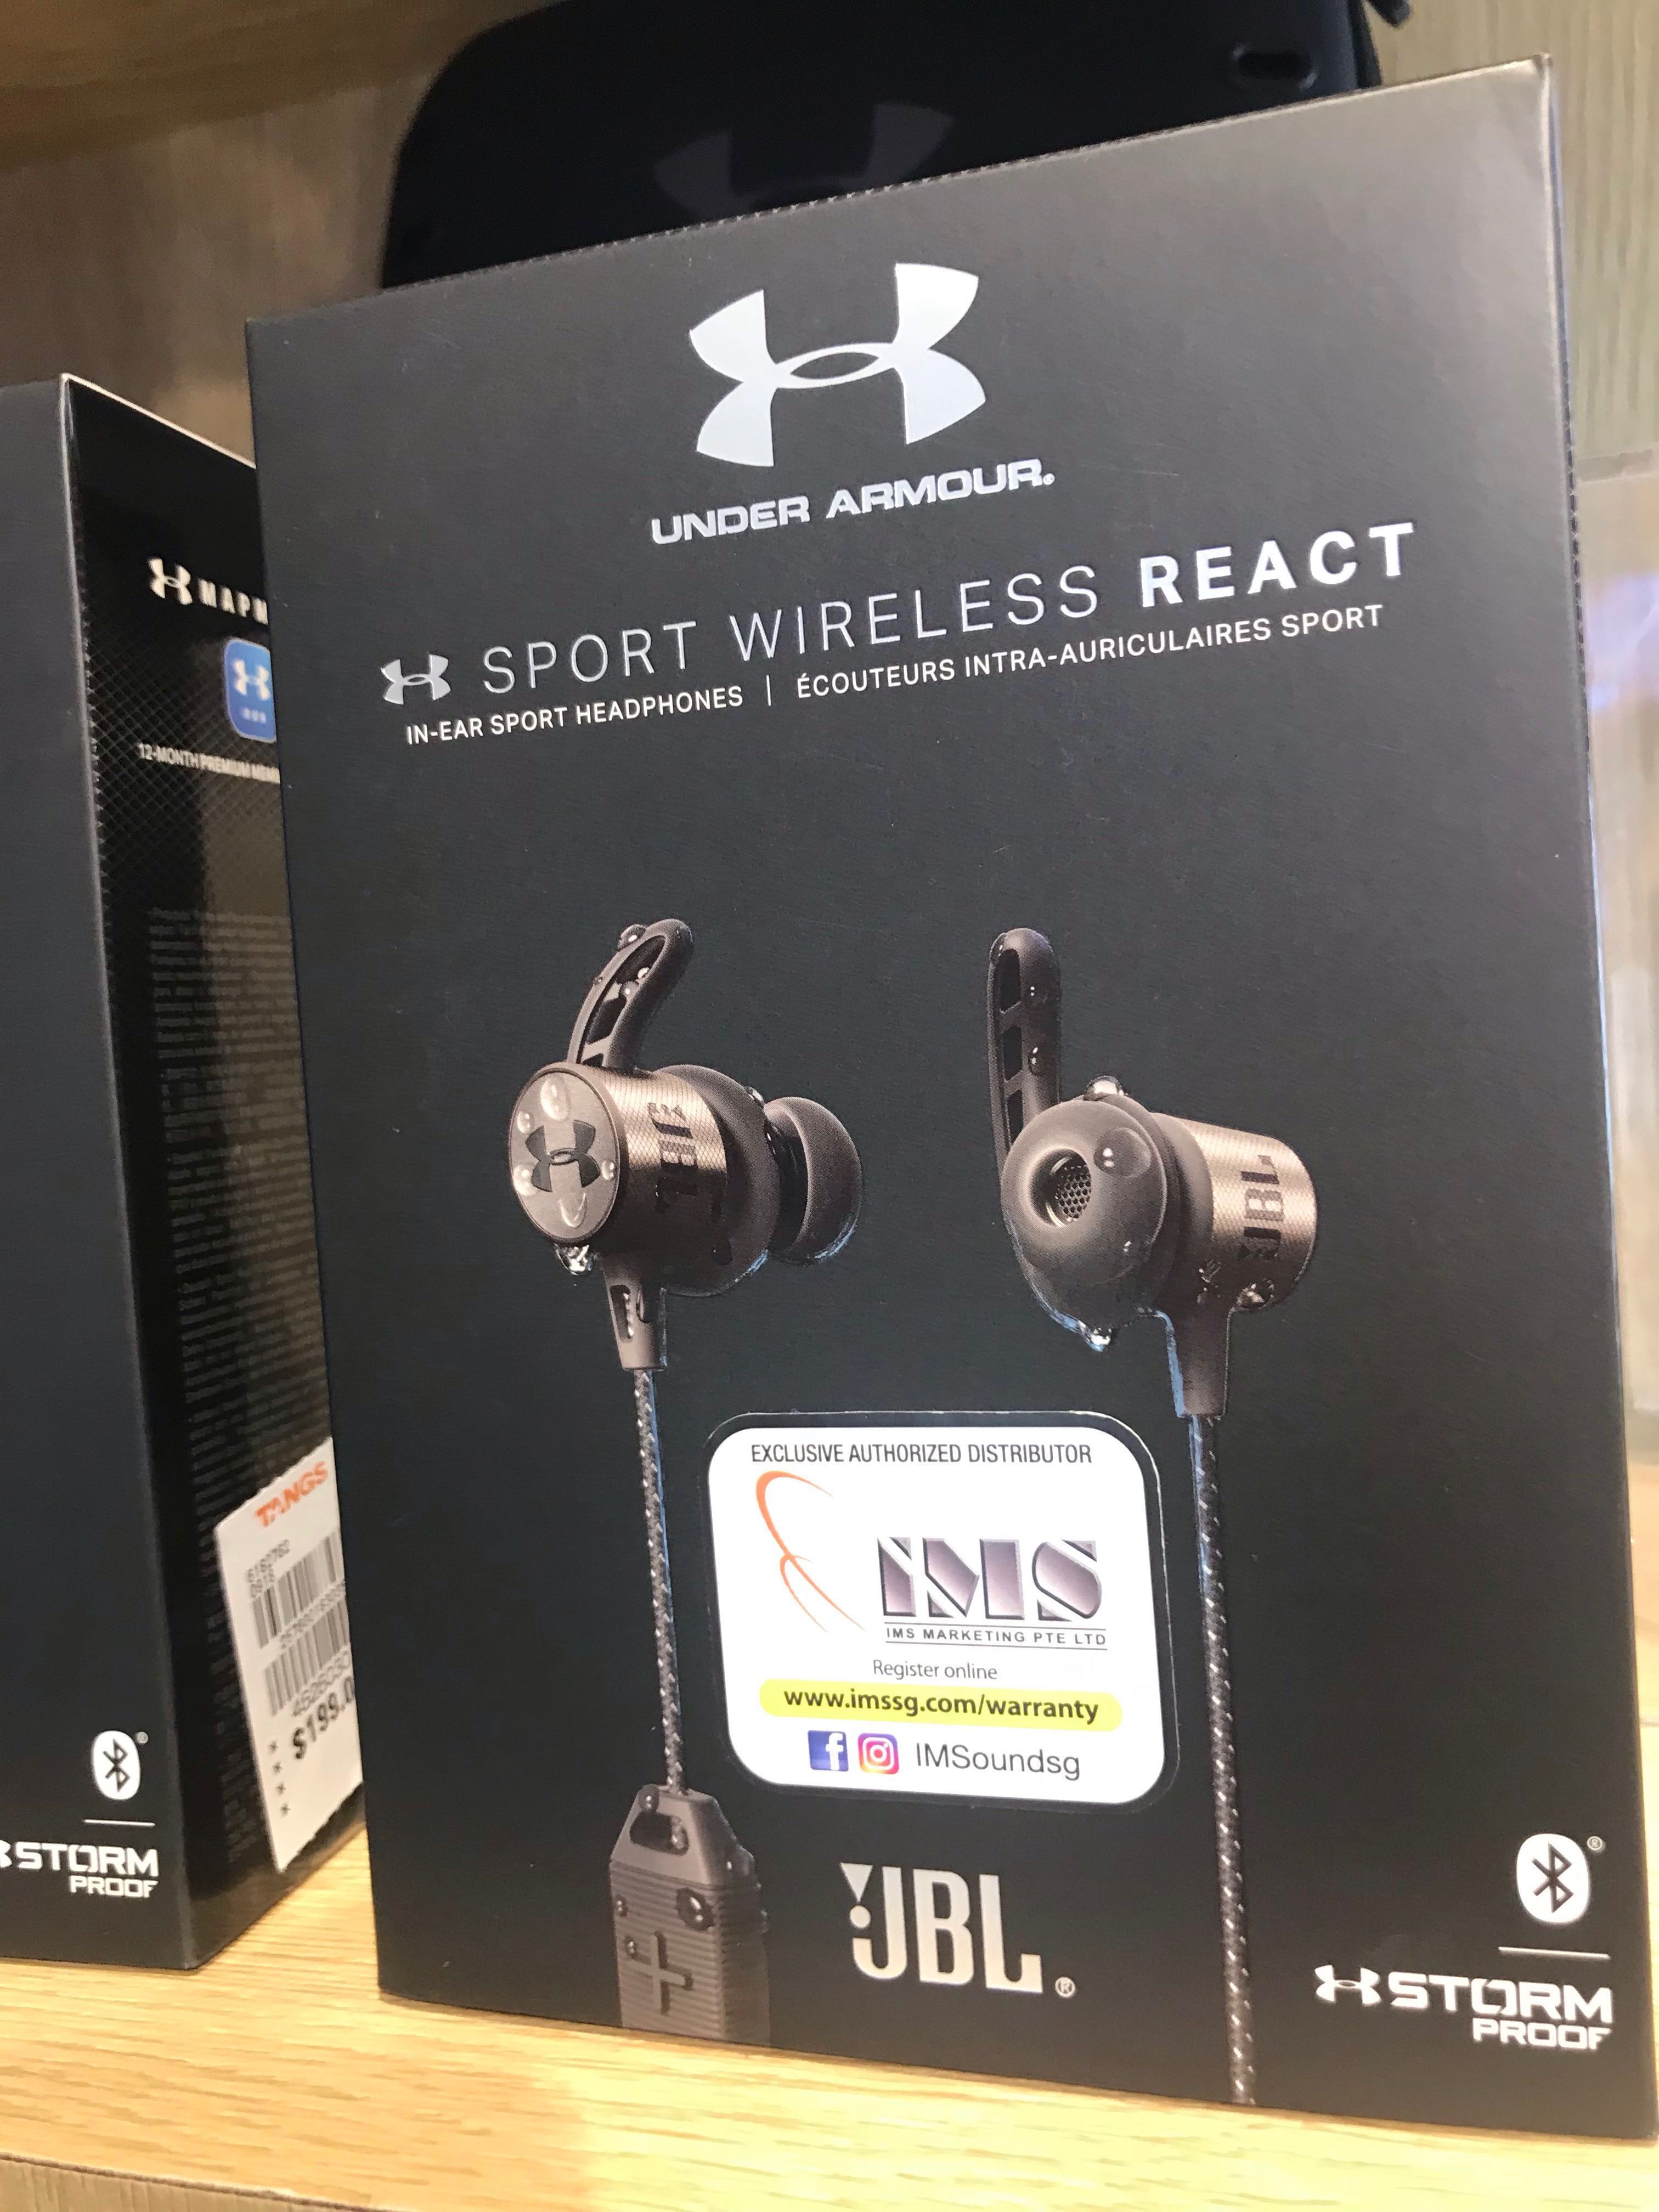 JBL X UA Sport Wireless React, Audio 